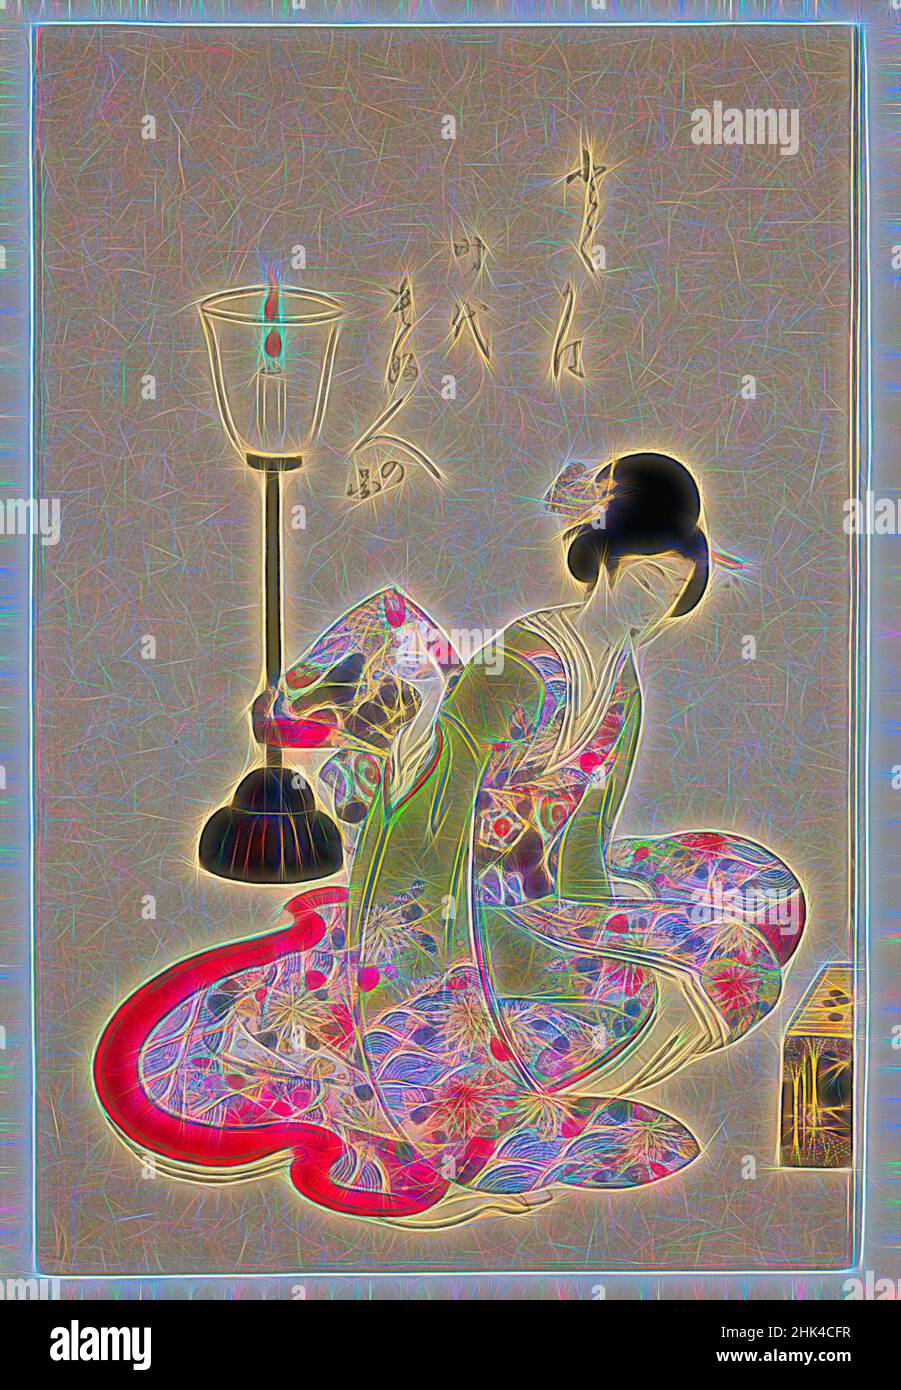 Inspiré par image des femmes de l'époque faisant des choses, Toyohara Chikanobu, japonais, 1838-1912, impression de blocs de bois de couleur sur papier, Japon, fin 19th-20th siècle, période Meiji, 14 1/4 x 9 3/8 po., 36,2 x 23,8 cm, bougie, réimaginé par Artotop. L'art classique réinventé avec une touche moderne. Conception de lumière chaleureuse et gaie, de luminosité et de rayonnement de lumière. La photographie s'inspire du surréalisme et du futurisme, embrassant l'énergie dynamique de la technologie moderne, du mouvement, de la vitesse et révolutionne la culture Banque D'Images